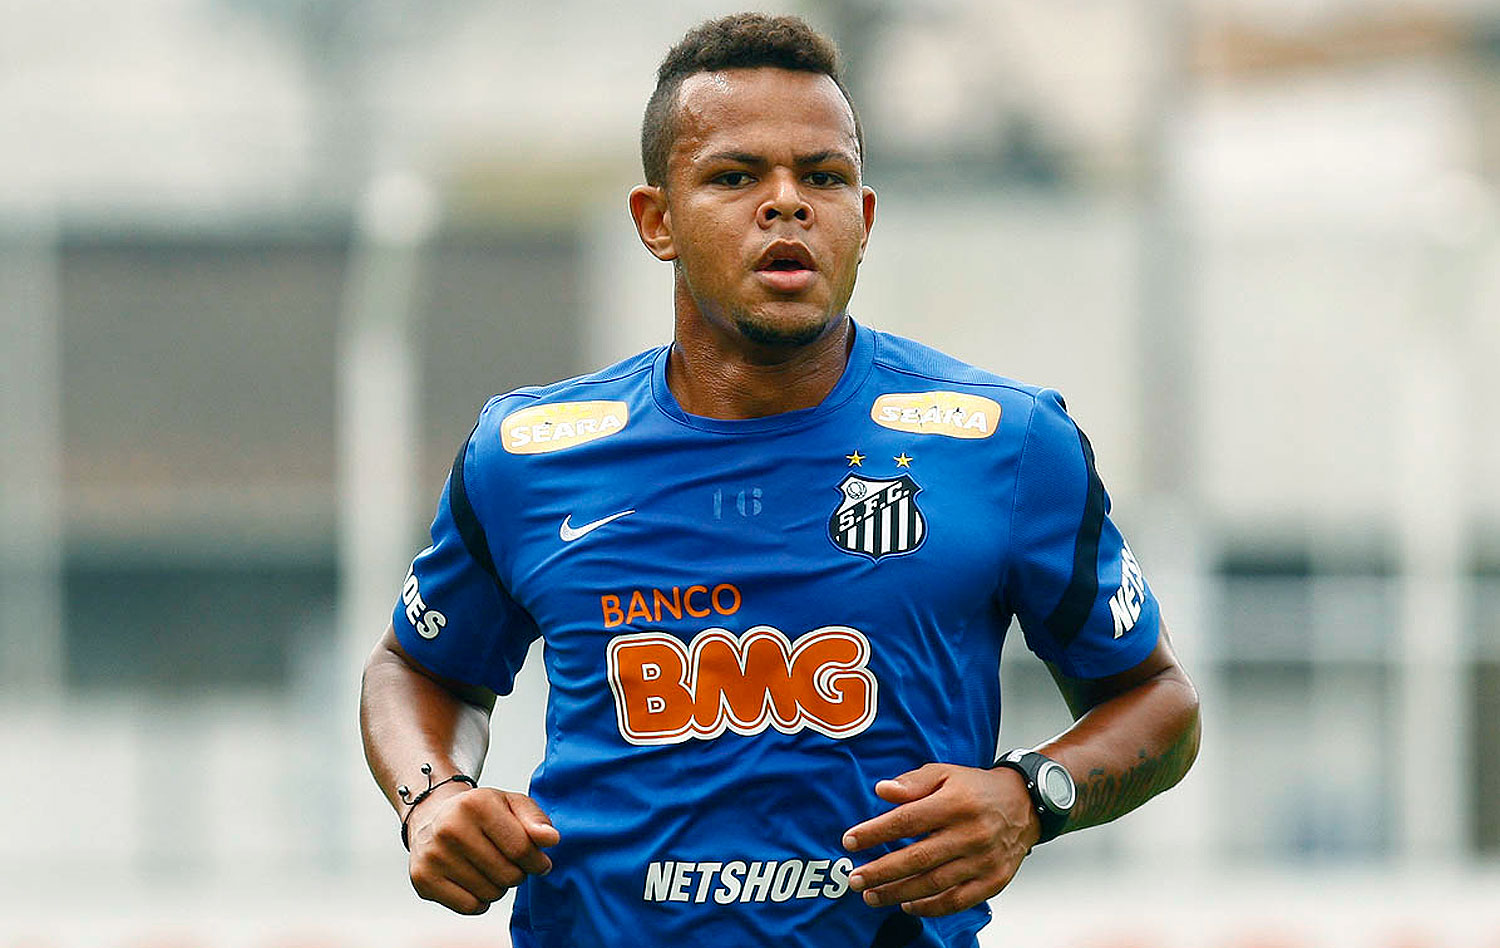 O atacante Bill, que já jogou no Botafogo e no Corinthians, chegou a ter prisão decretada em 2015 por falta de pagamento de prisão alimentícia à ex-mulher.